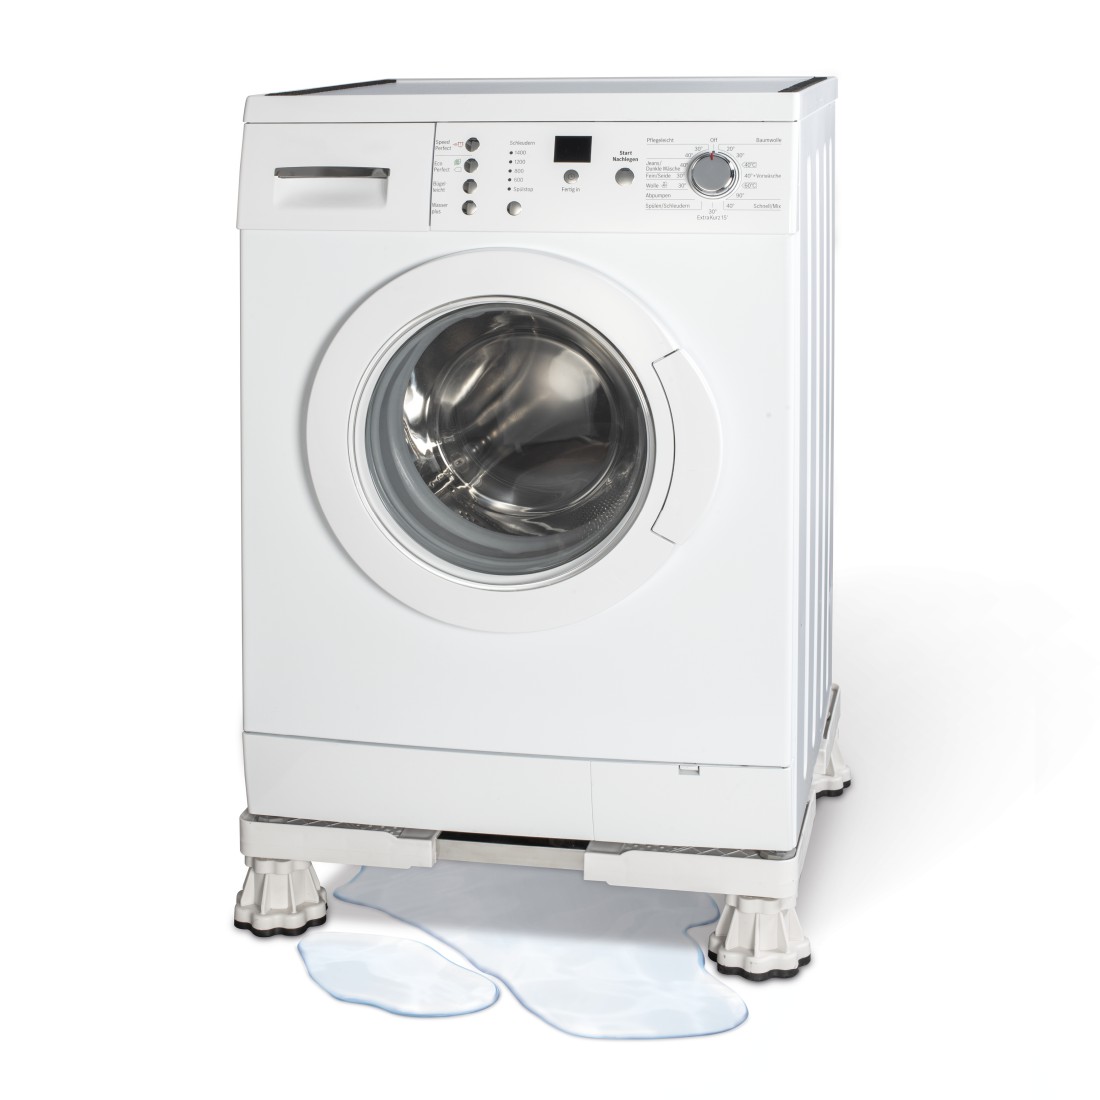 awx Druckfähige Anwendung - Xavax, Waschmaschinen-Untergestell, verstellbar, 13-18 cm Höhe, 150kg Traglast